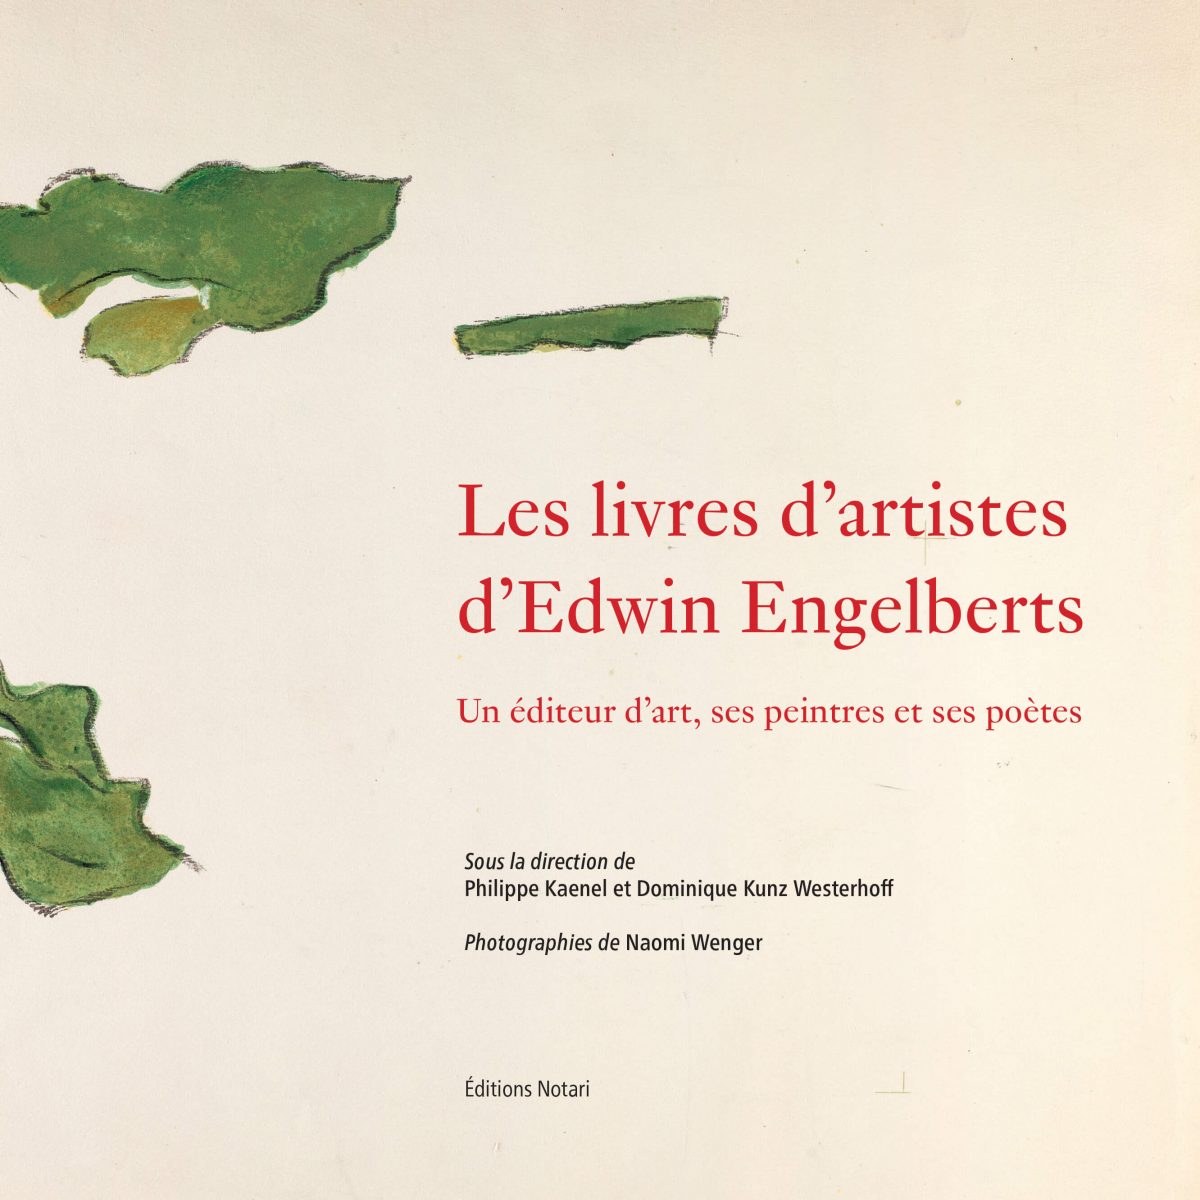 Les livres d’artistes d’Edwin Engelberts. Un éditeur d’art, ses peintres et ses poètes